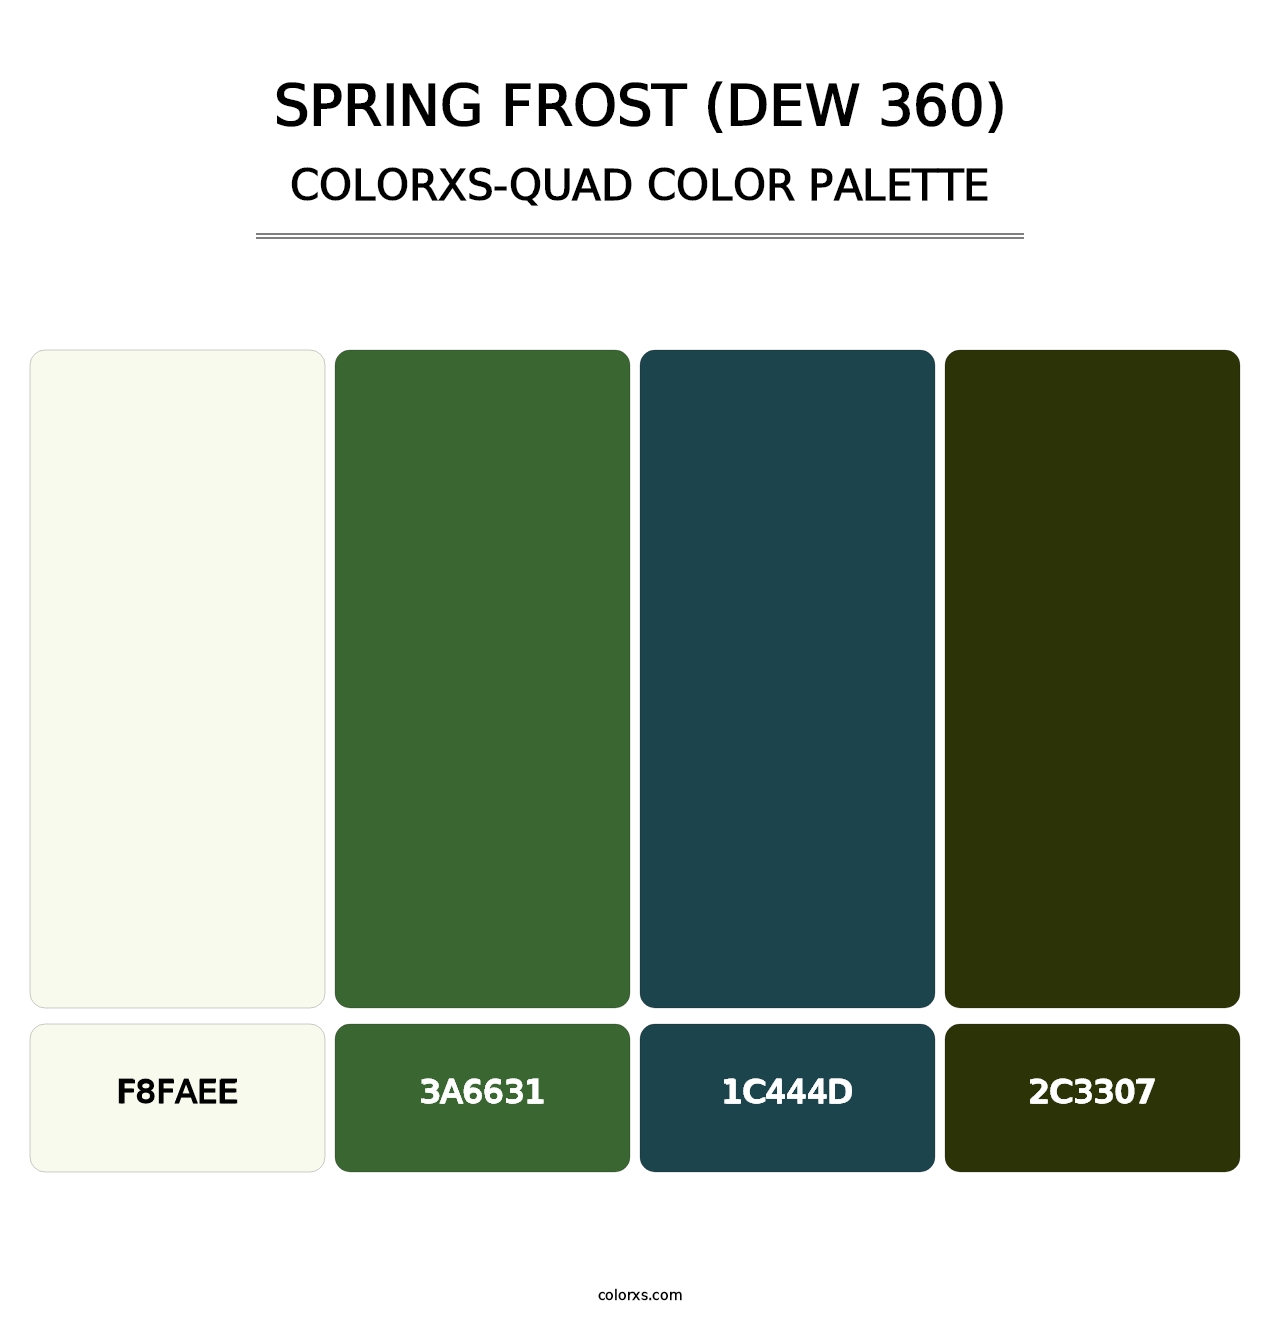 Spring Frost (DEW 360) - Colorxs Quad Palette